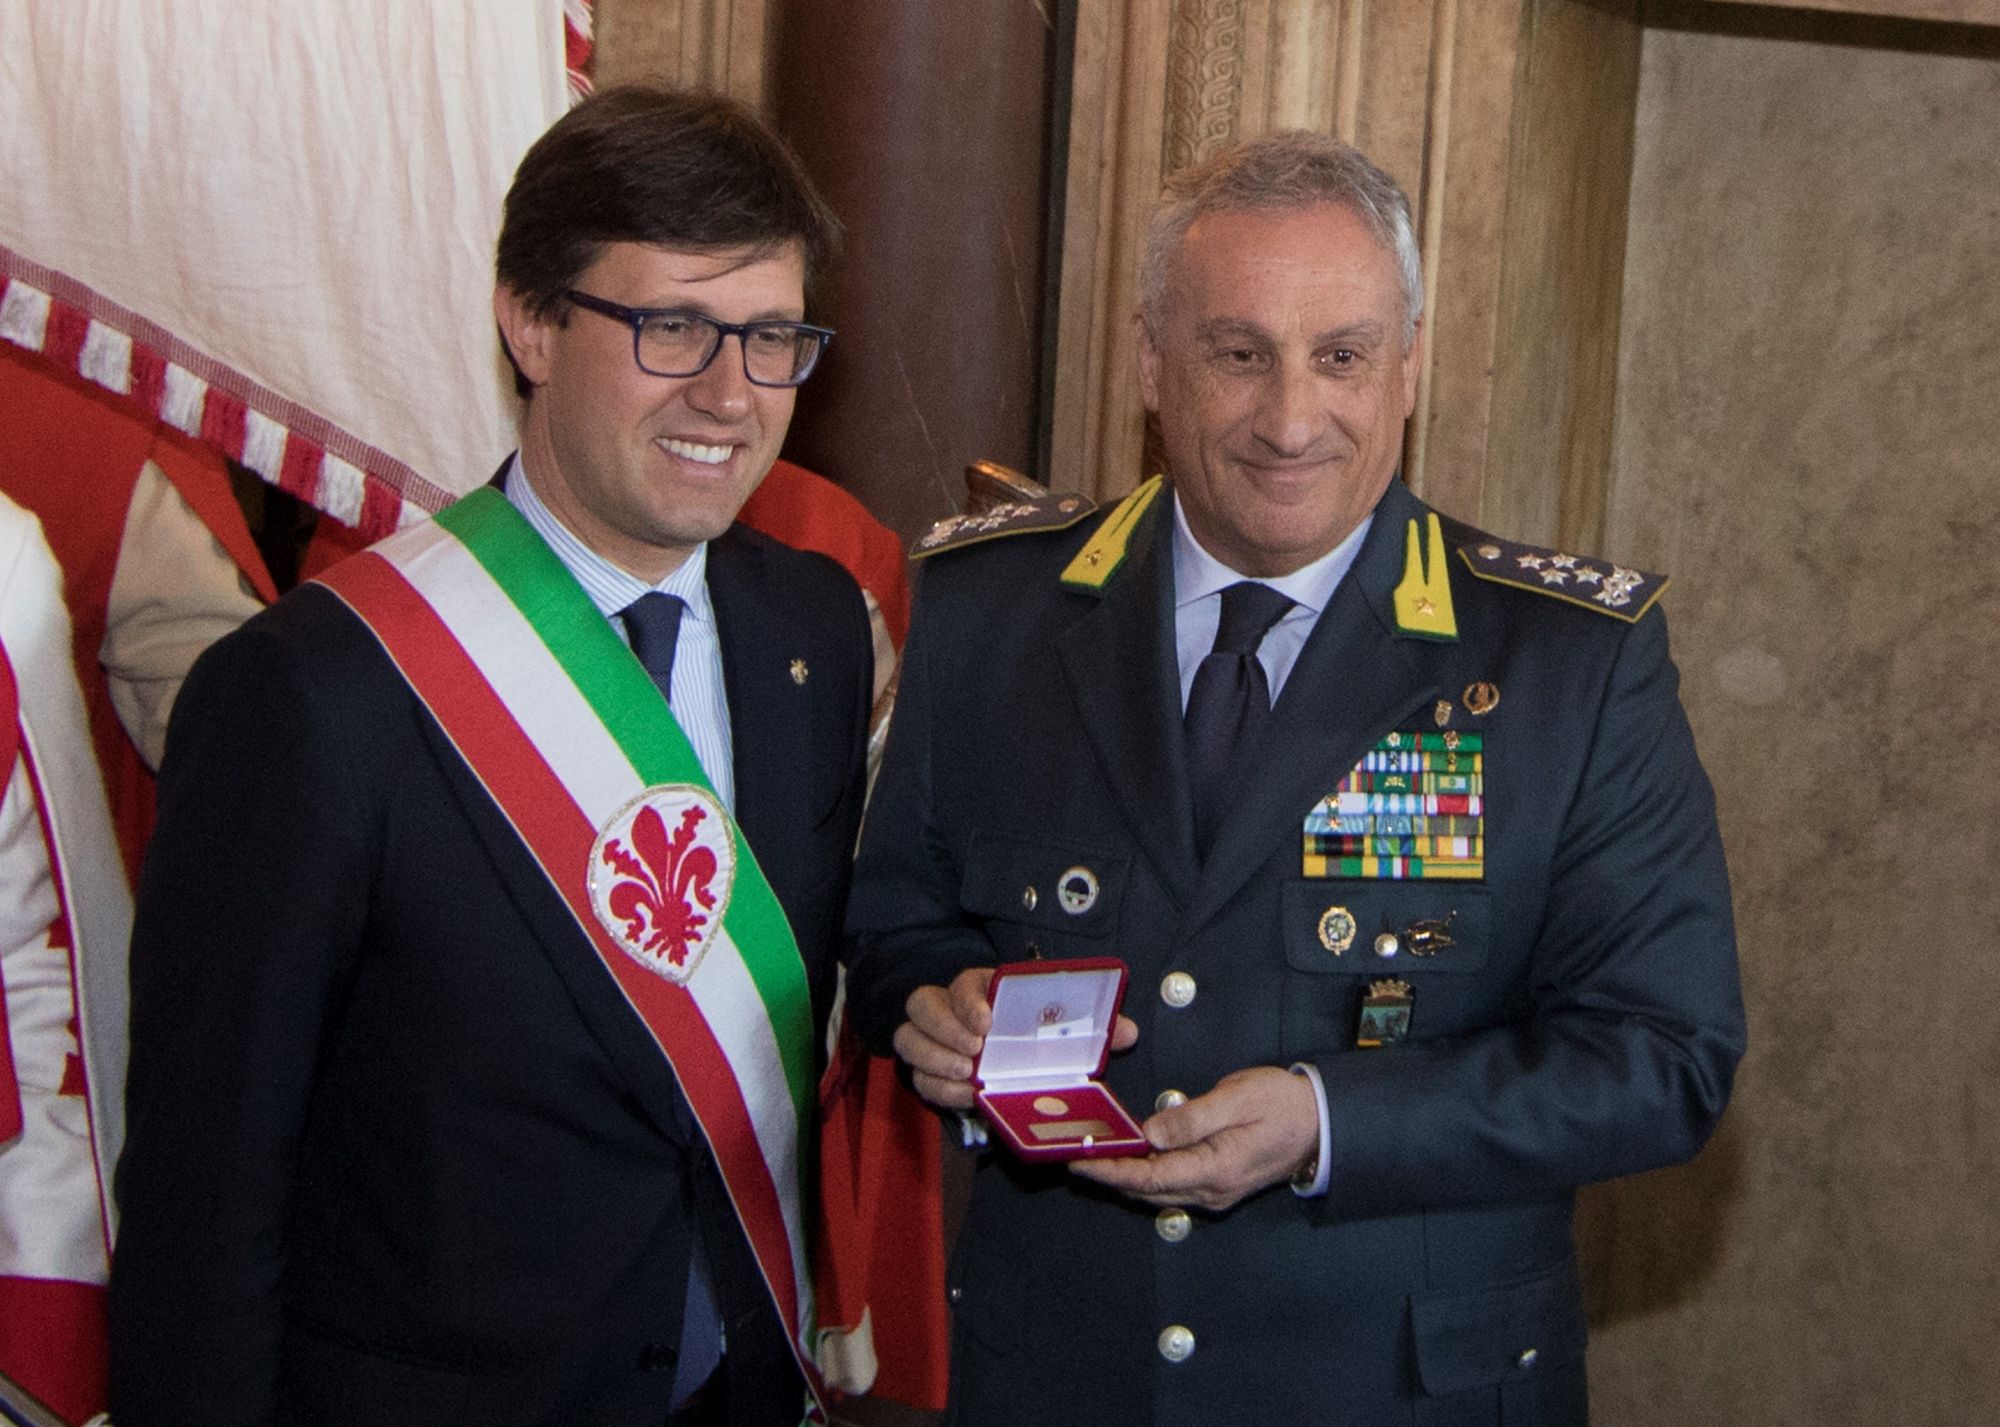 Fiorino d’oro per il generale Giorgio Toschi: la sua carriera nella GdF è iniziata a Viareggio